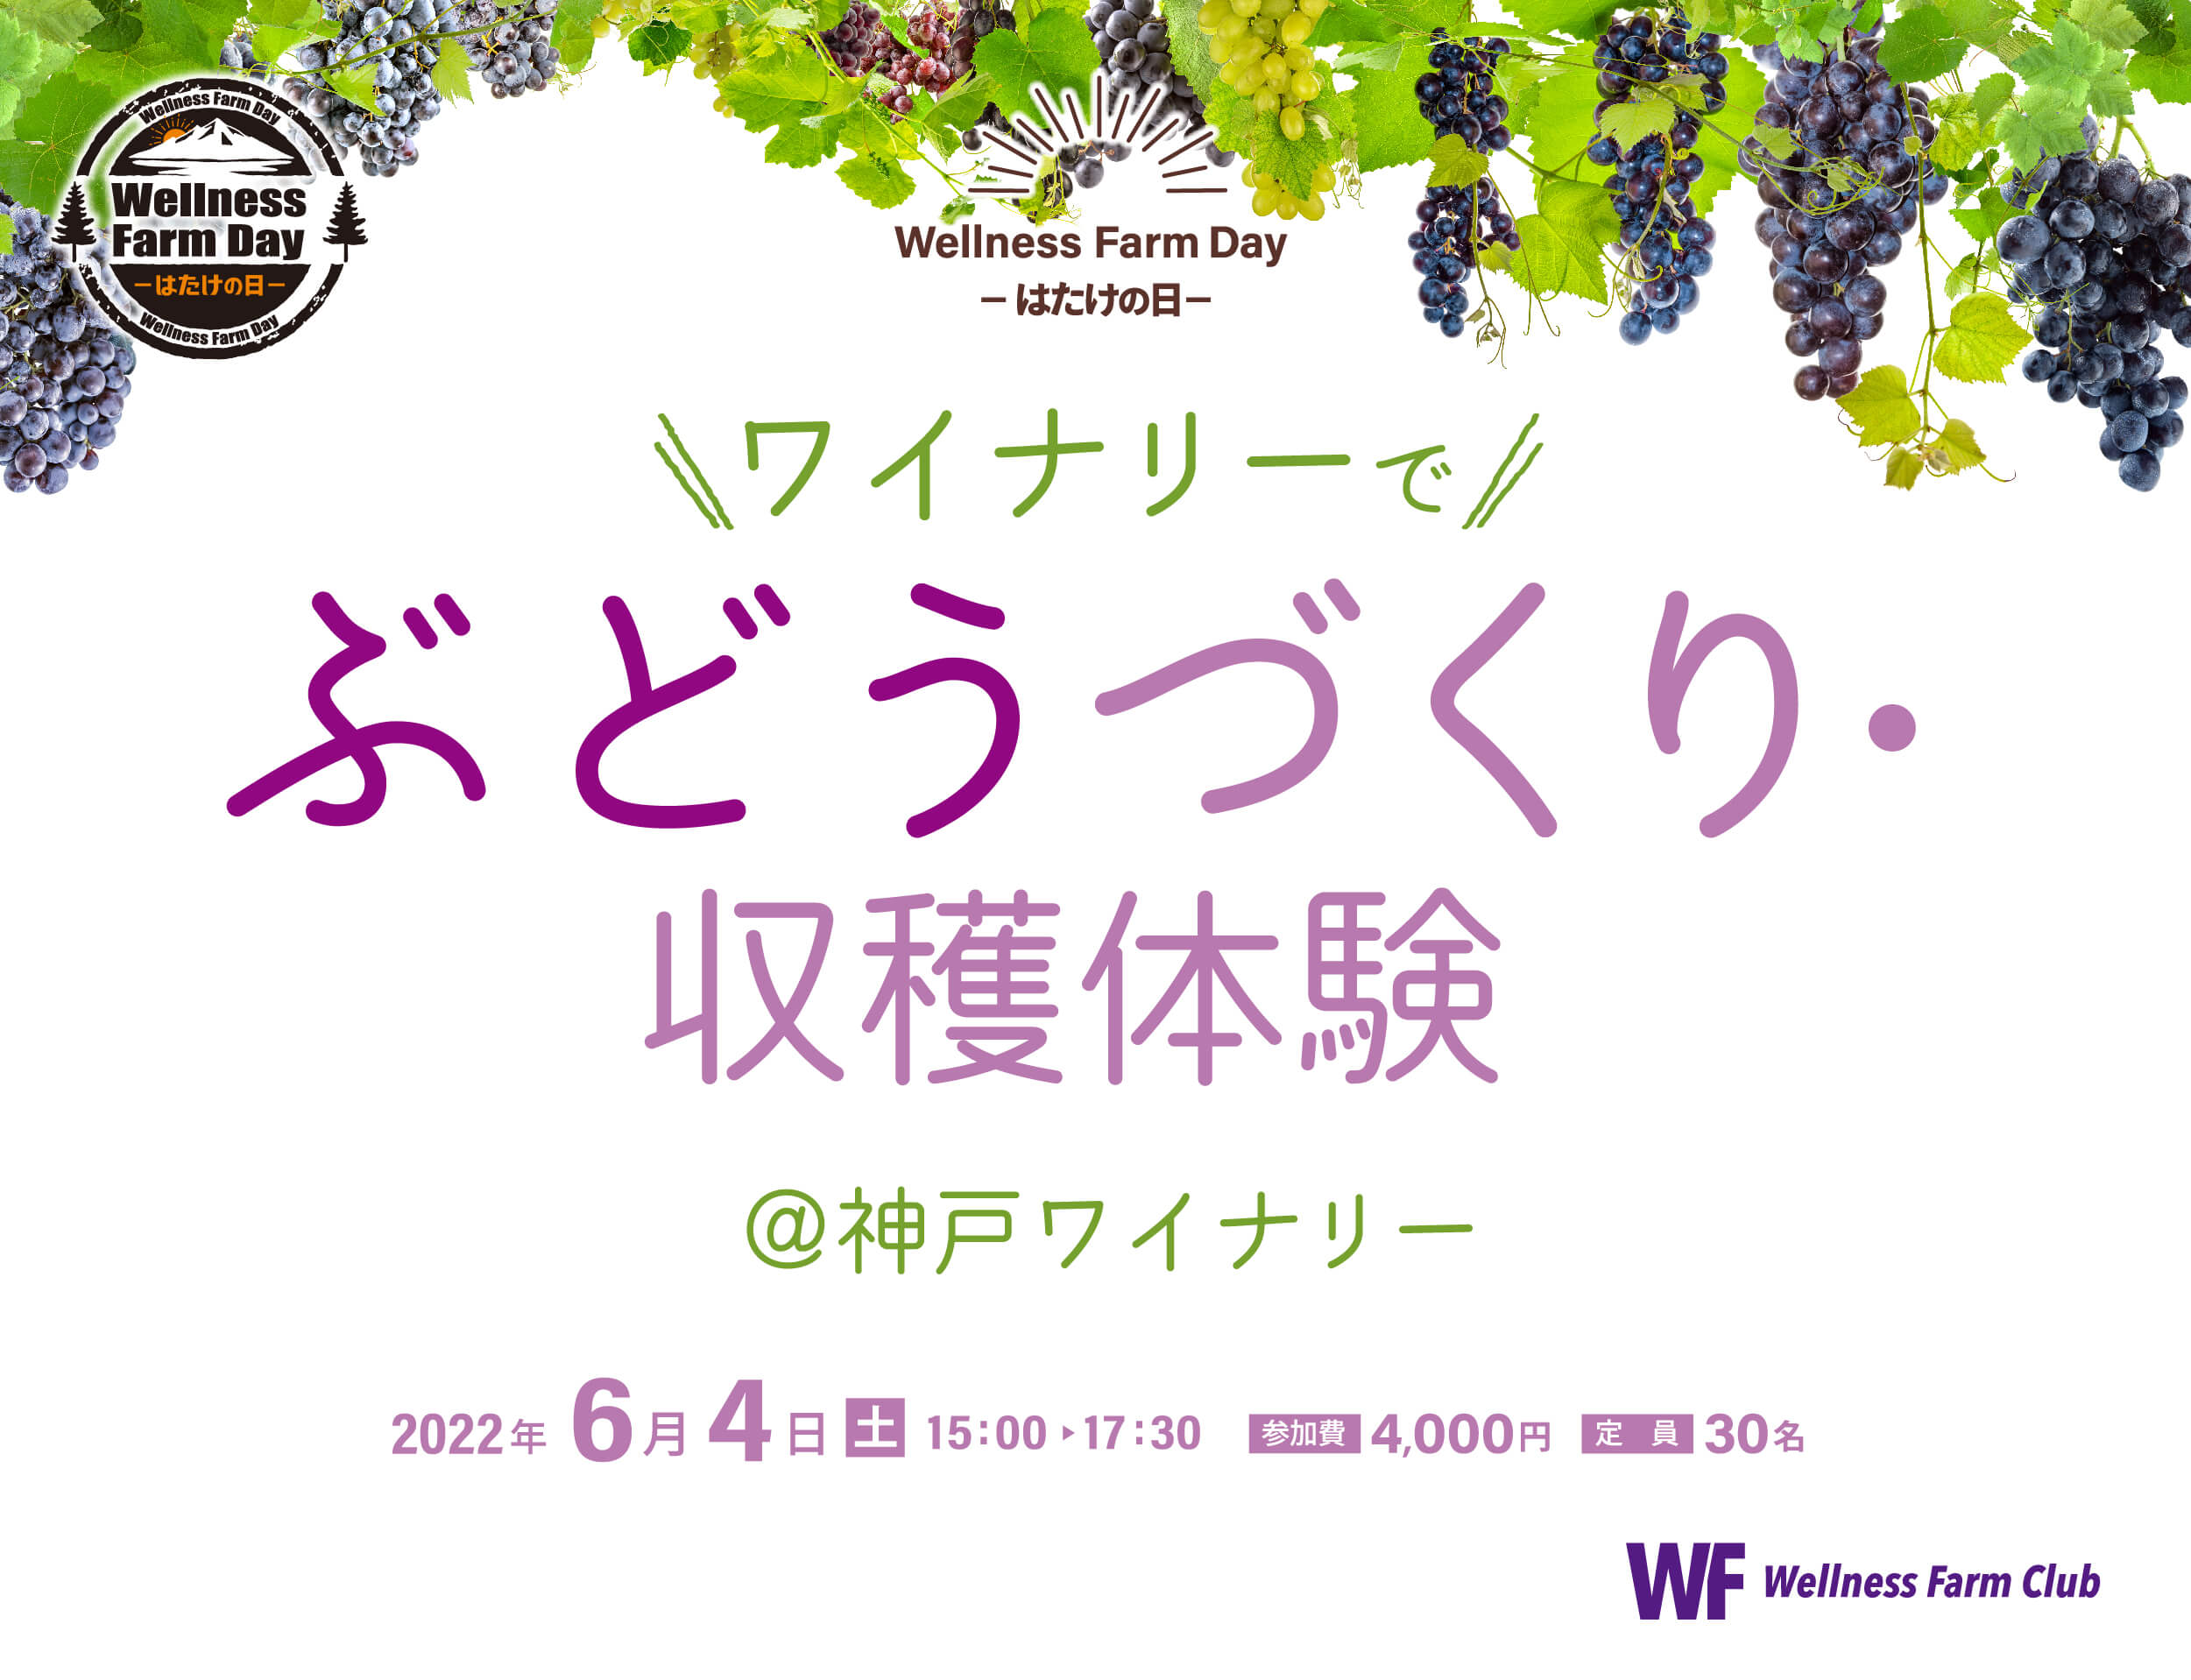 6月4日【Wellness Farm day】-はたけの日-ワイナリーでぶどうづくり・収穫体験 @神戸ワイナリー